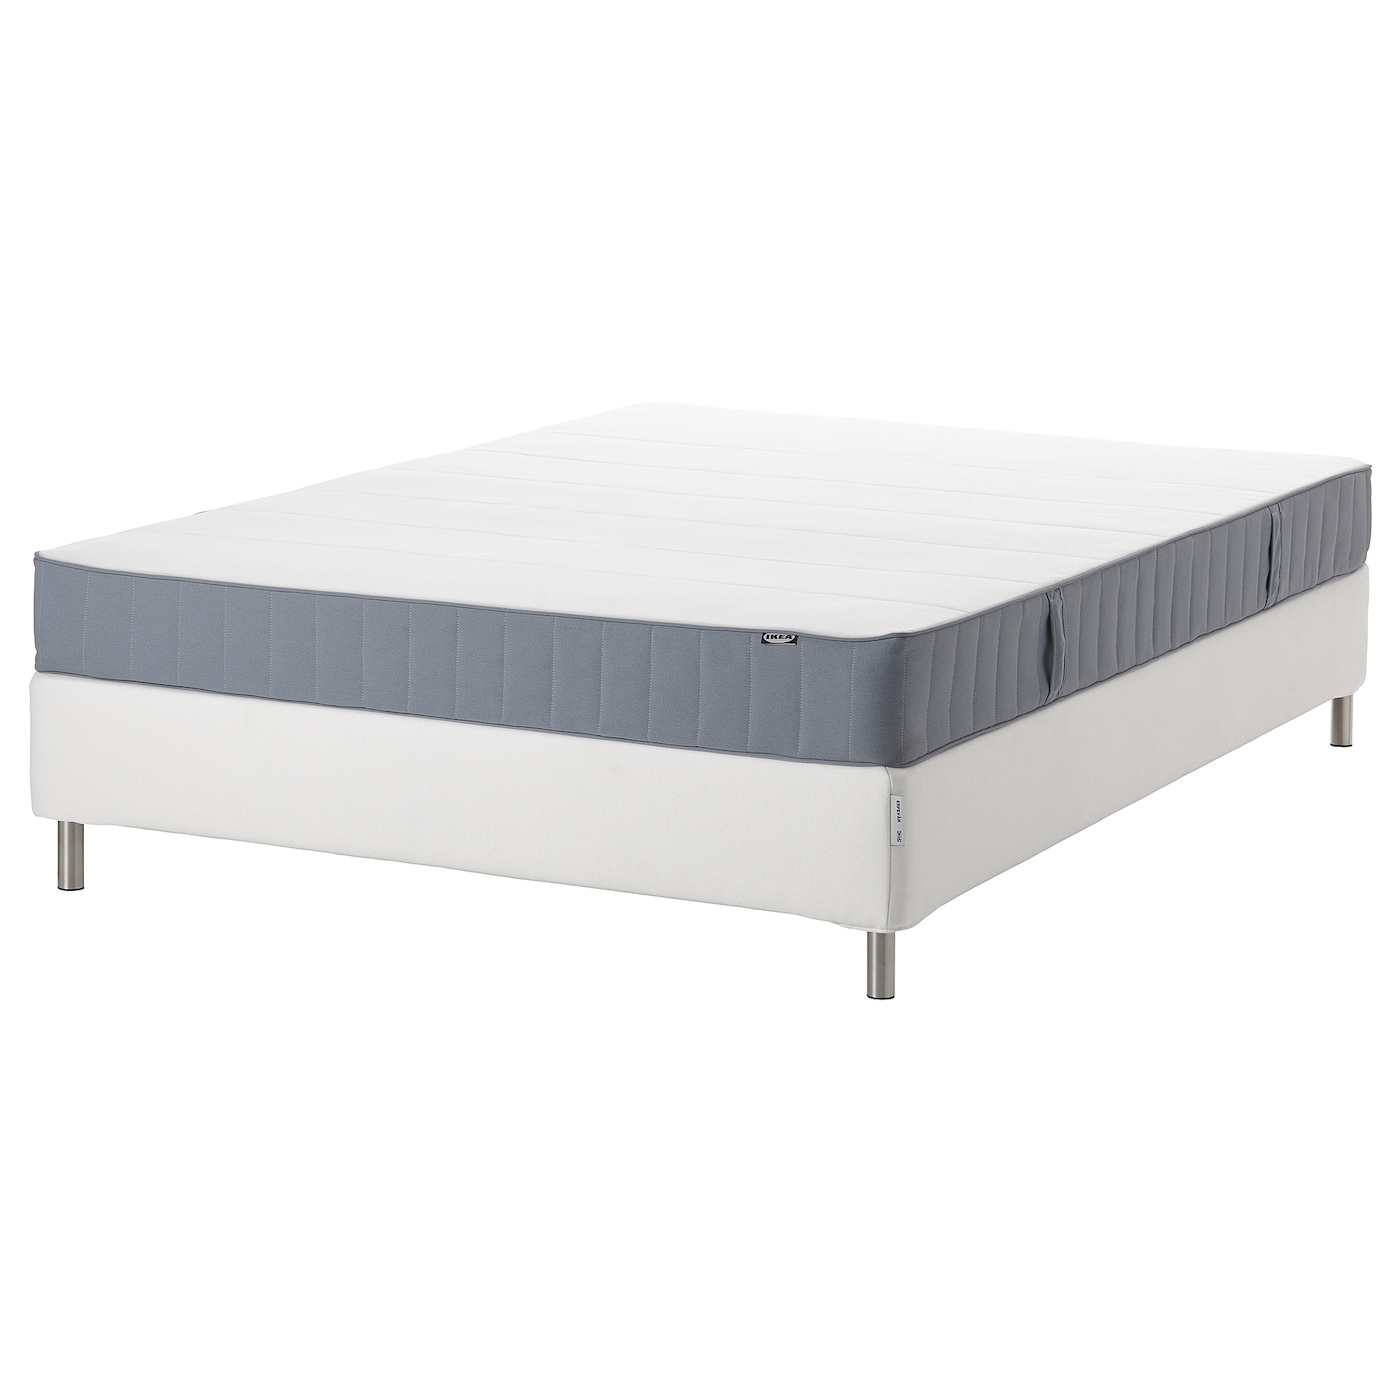 Континентальная кровать - IKEA ESPEVÄR/ESPEVAR/VESTMARKA, 200х140 см, жесткий матрас, белый, ЭСПЕВАР/ВЕСТМАРКА ИКЕА